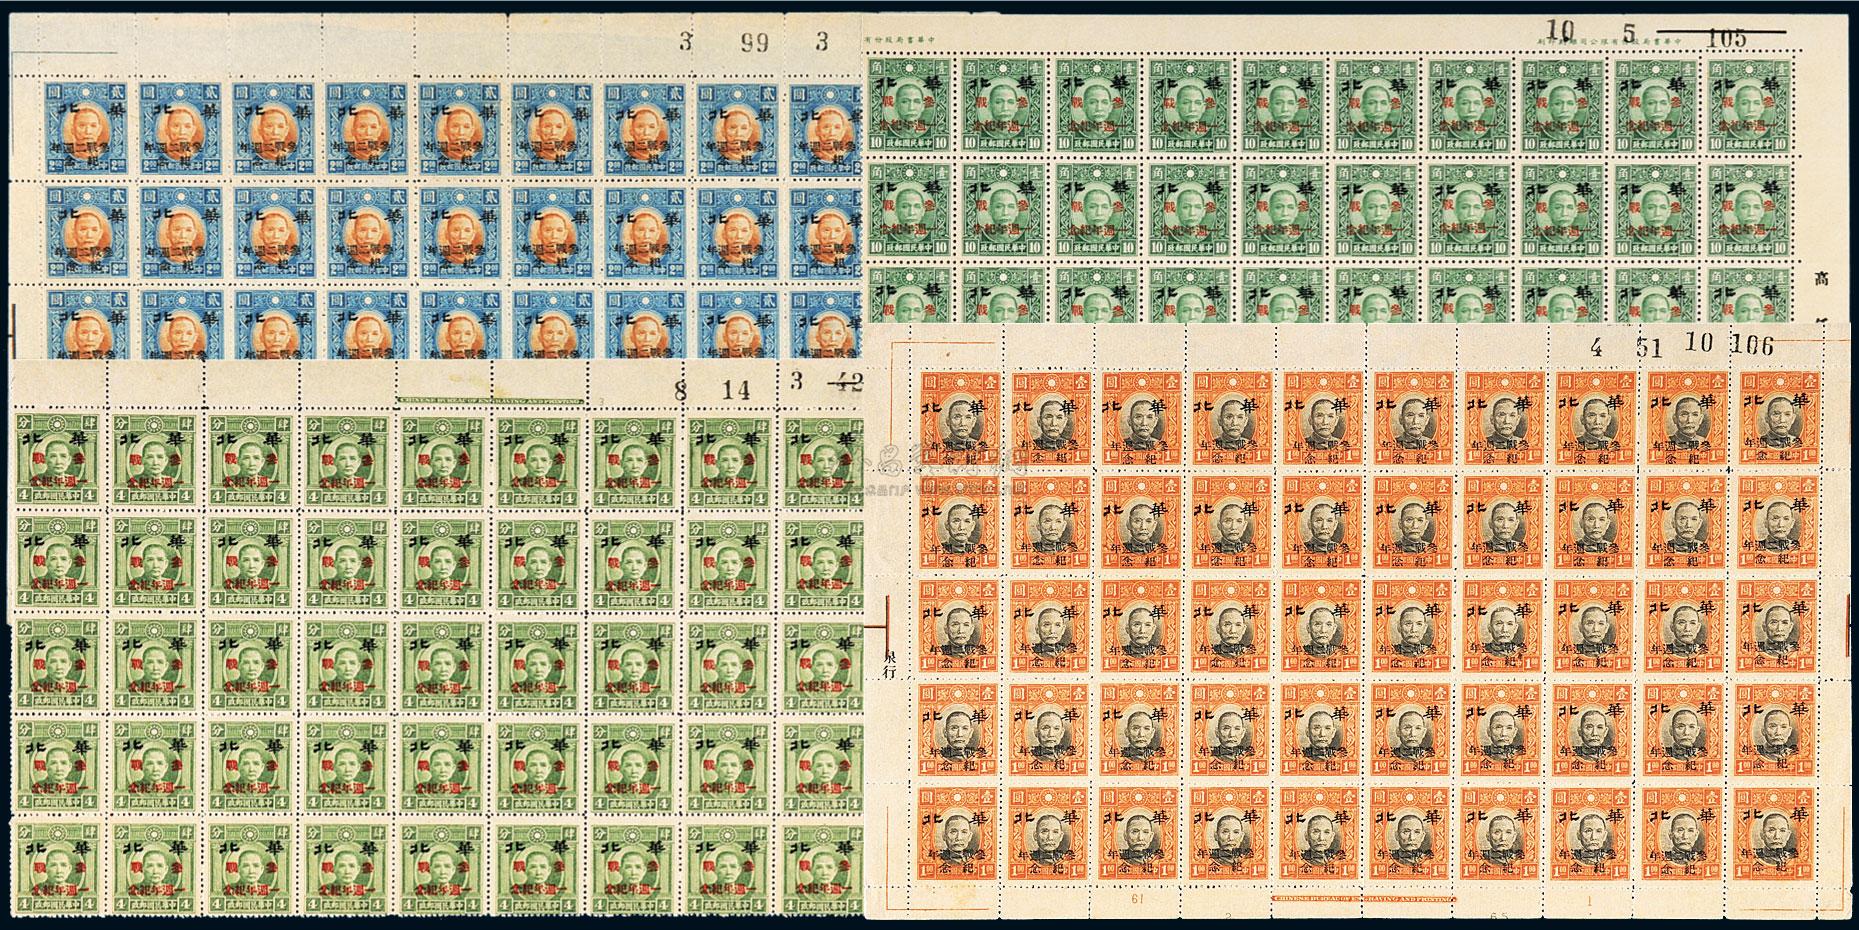 23L A ロシア切手 1980年 イヤーセット 記念・特殊 各種 計100種+ 小型 